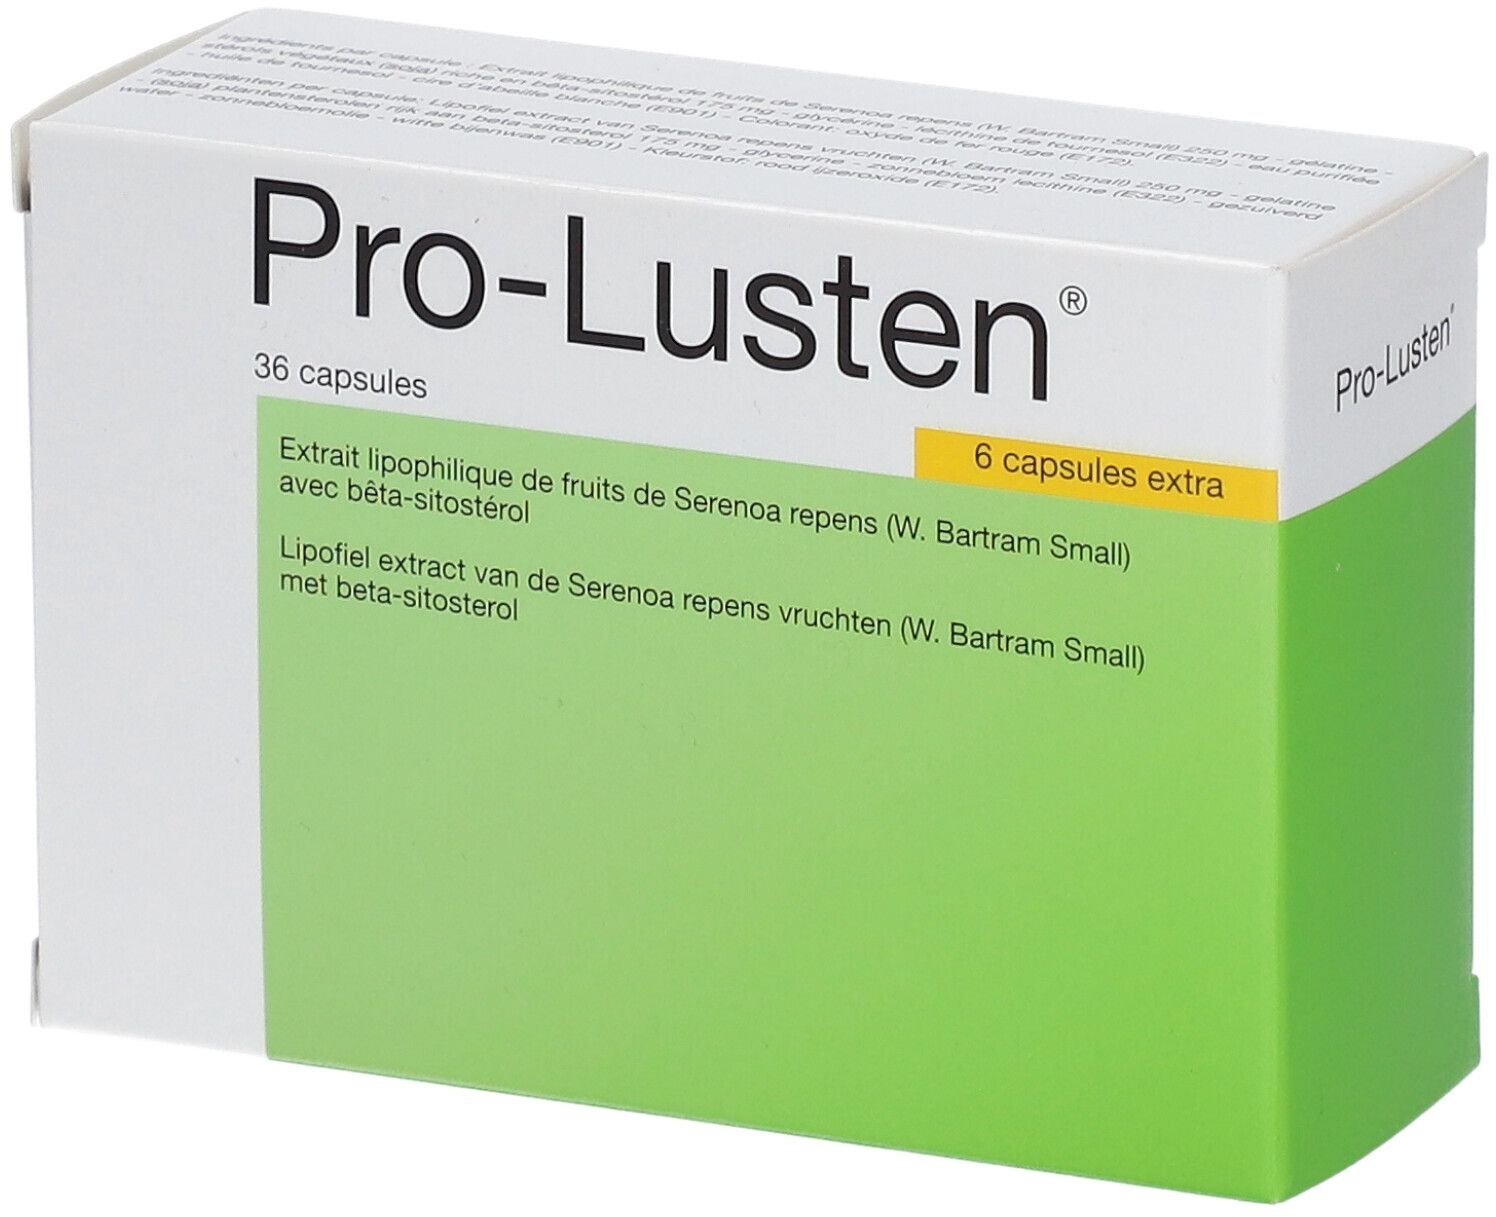 Pro-Lusten 36 pc(s) capsule(s)